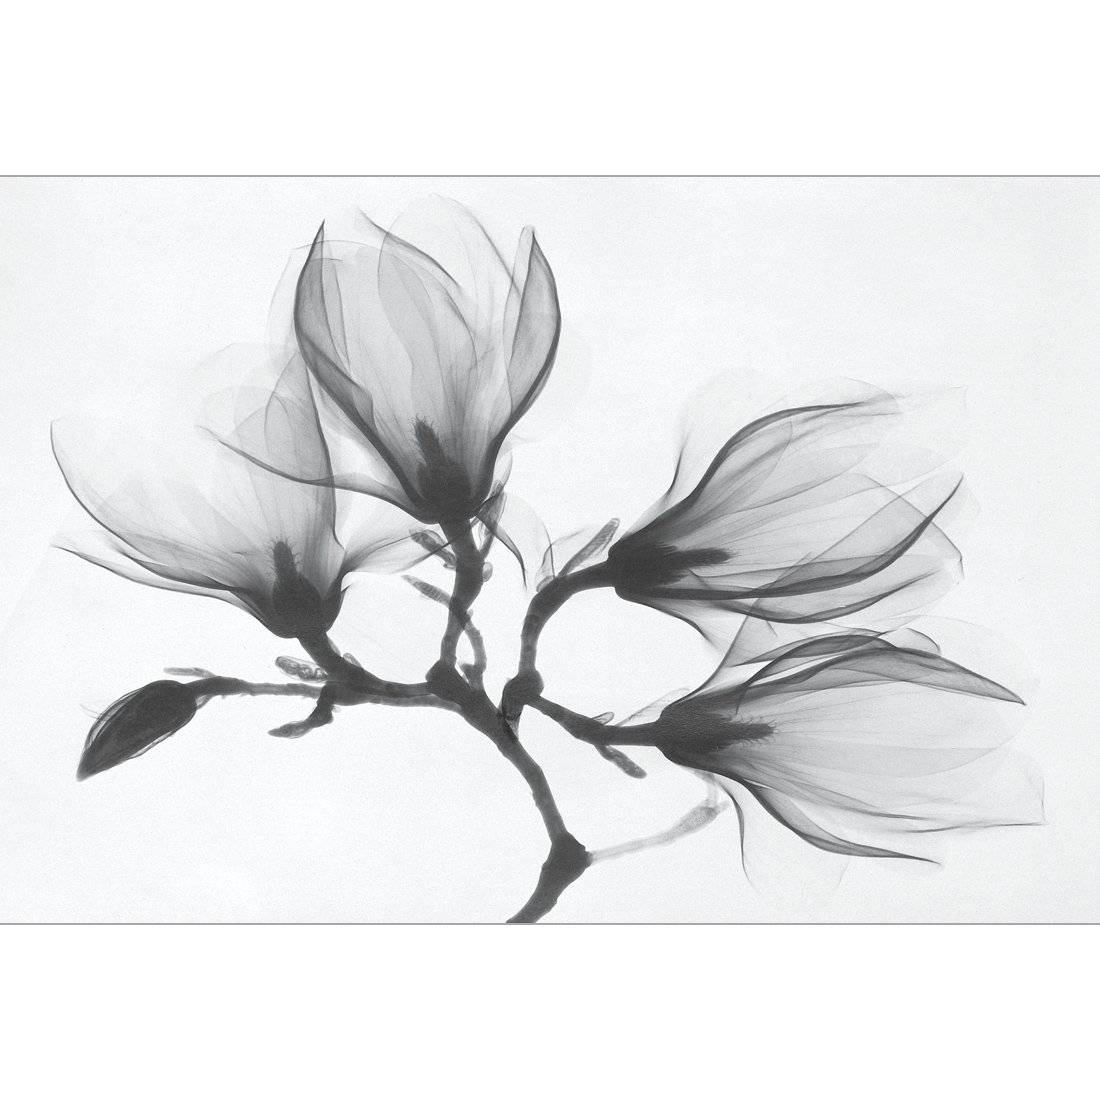 Magnolia Blossoms Canvas Art-Canvas-Wall Art Designs-45x30cm-Canvas - No Frame-Wall Art Designs